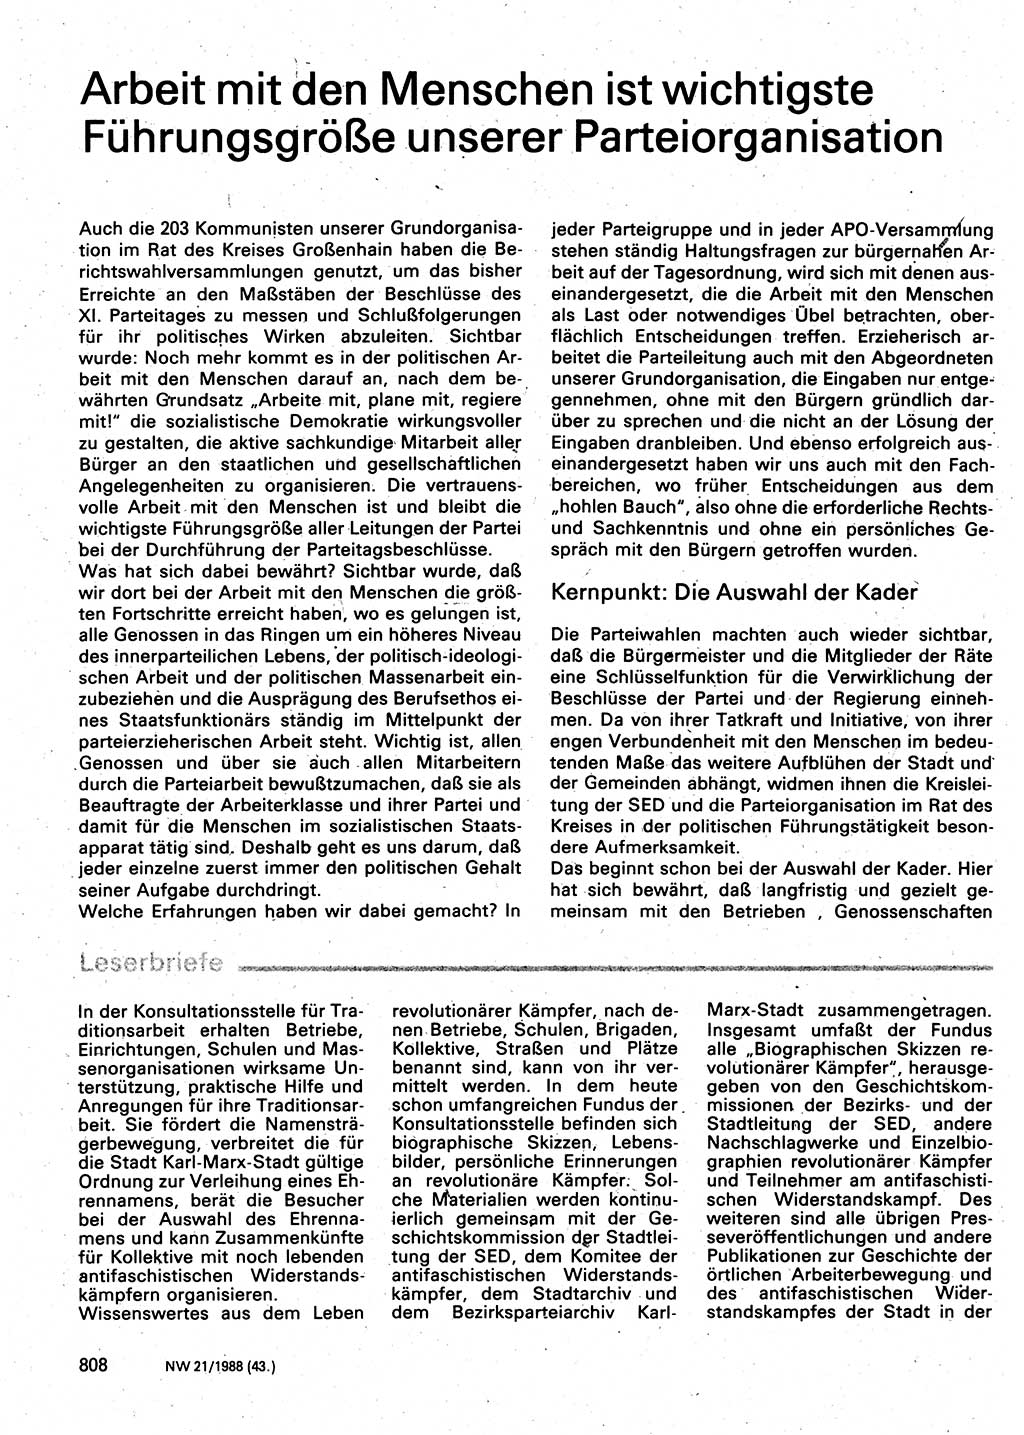 Neuer Weg (NW), Organ des Zentralkomitees (ZK) der SED (Sozialistische Einheitspartei Deutschlands) für Fragen des Parteilebens, 43. Jahrgang [Deutsche Demokratische Republik (DDR)] 1988, Seite 808 (NW ZK SED DDR 1988, S. 808)